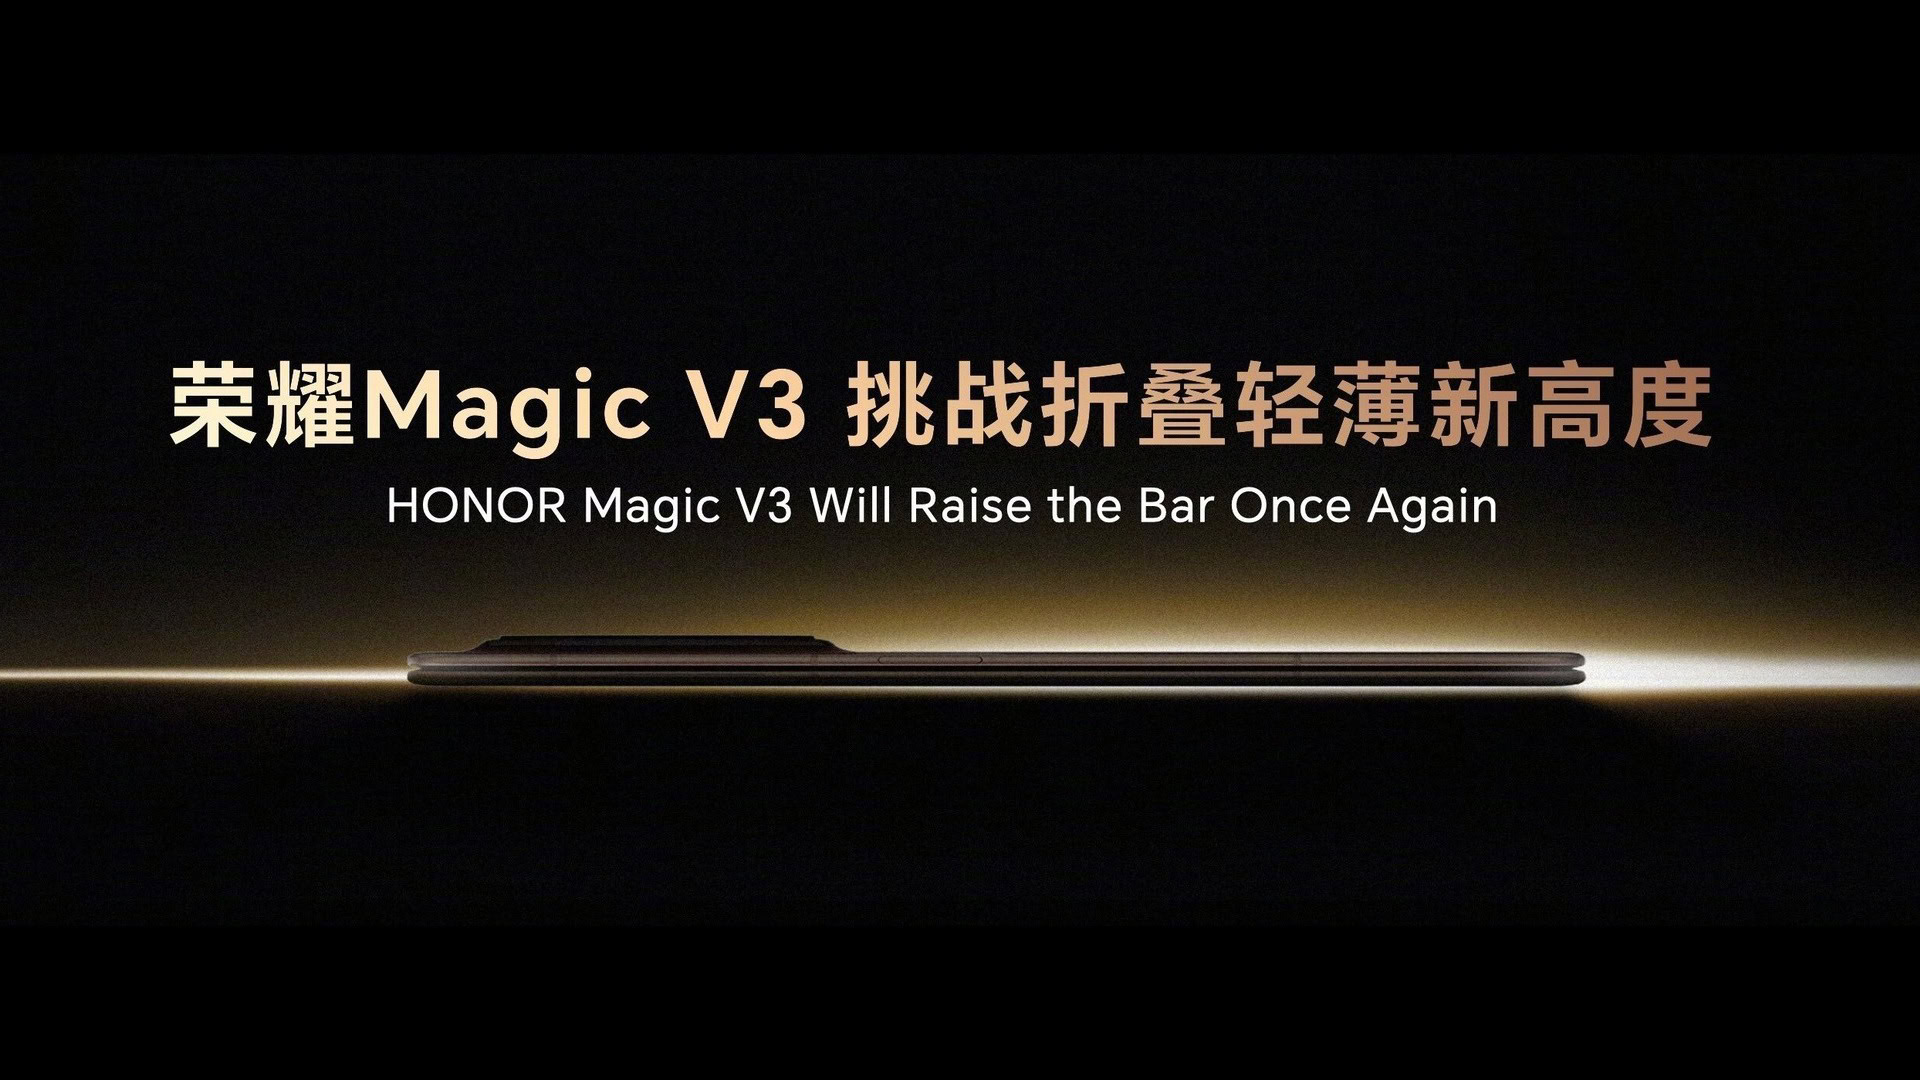 Honor Magic V3 promo